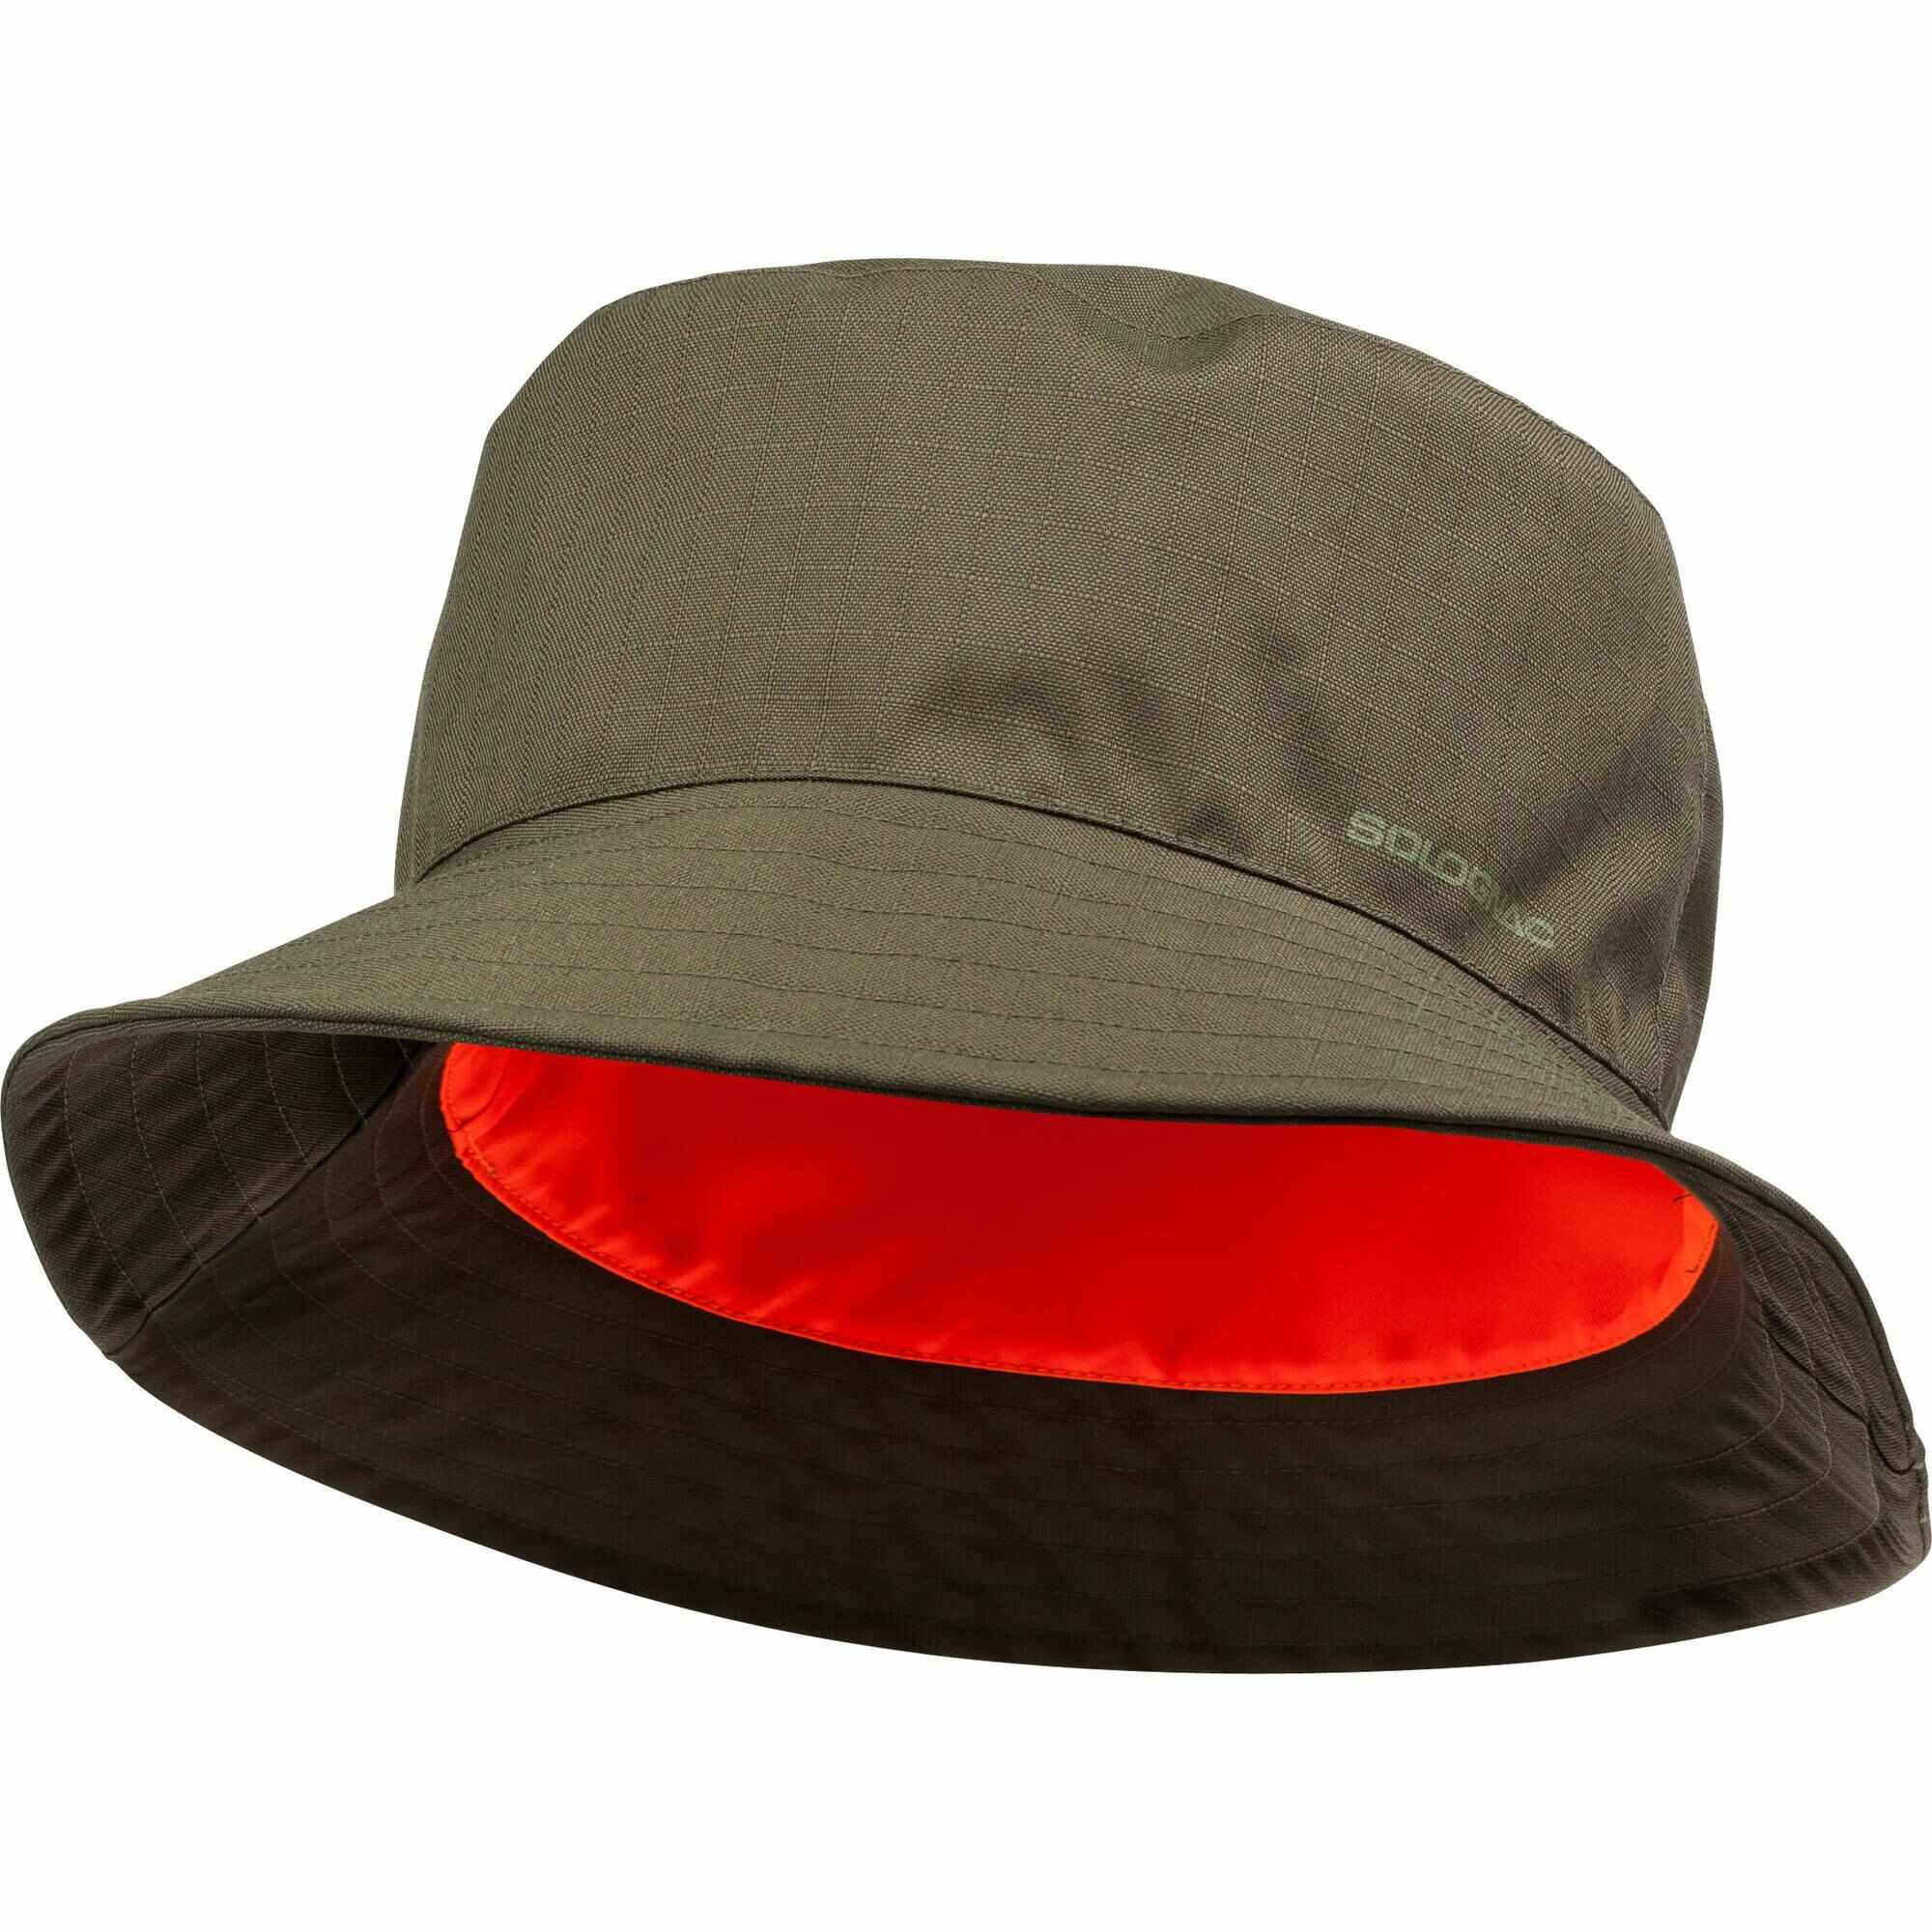 Alert Dissipation steel Pălărie vânătoare - 3519 produse